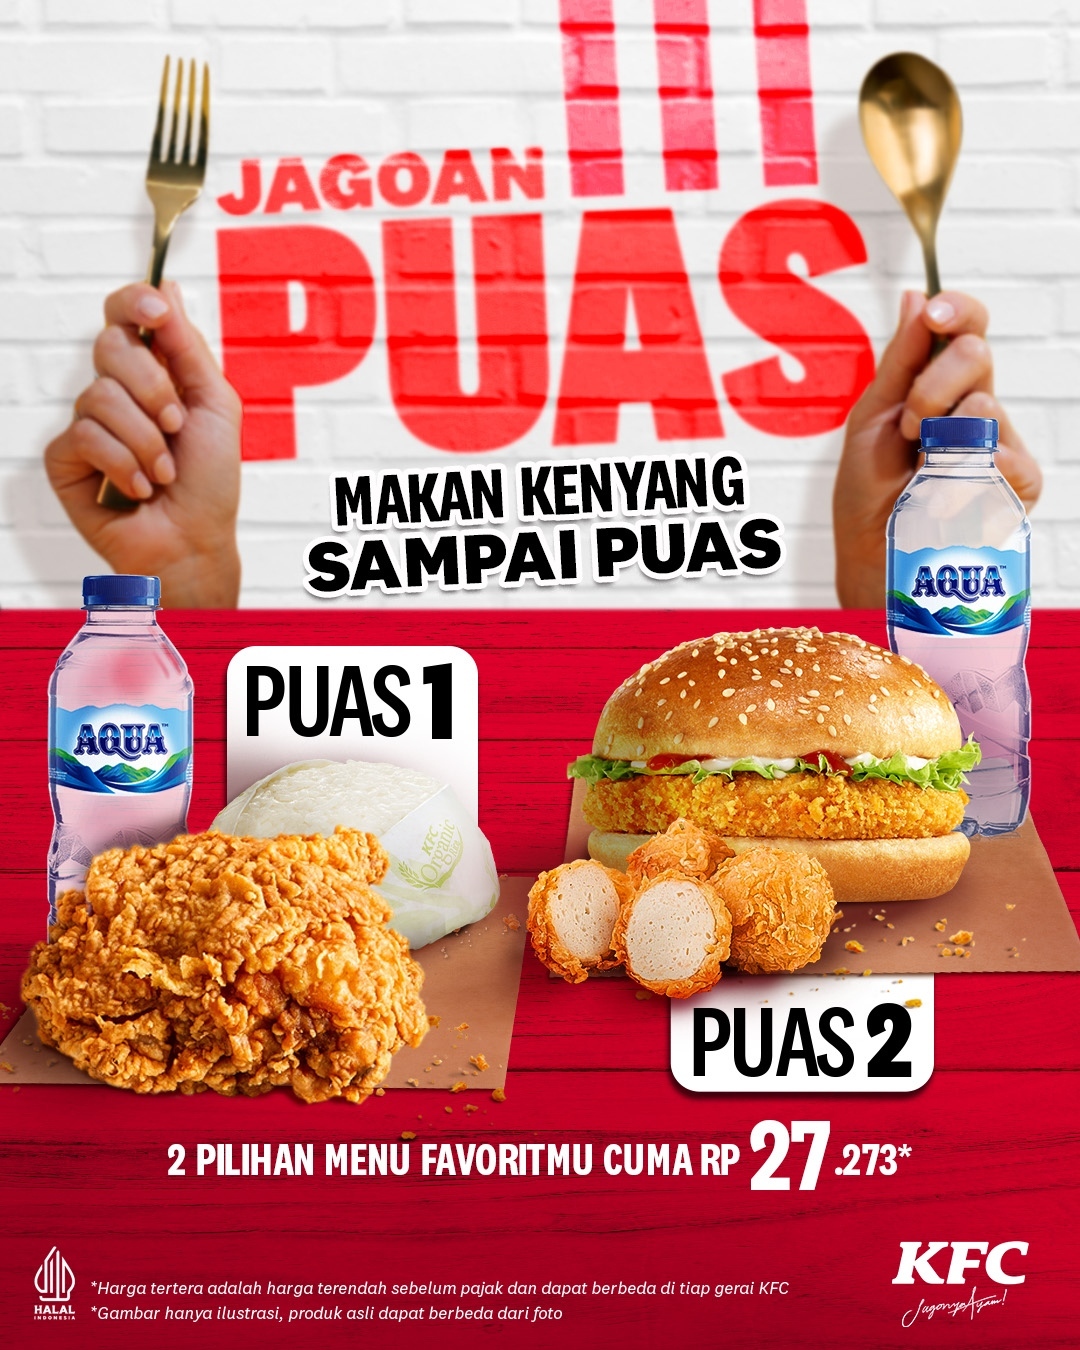 Promo KFC Jagoan Puas – 2 Pilihan Menu Favoritmu Hanya Rp. 27.273*